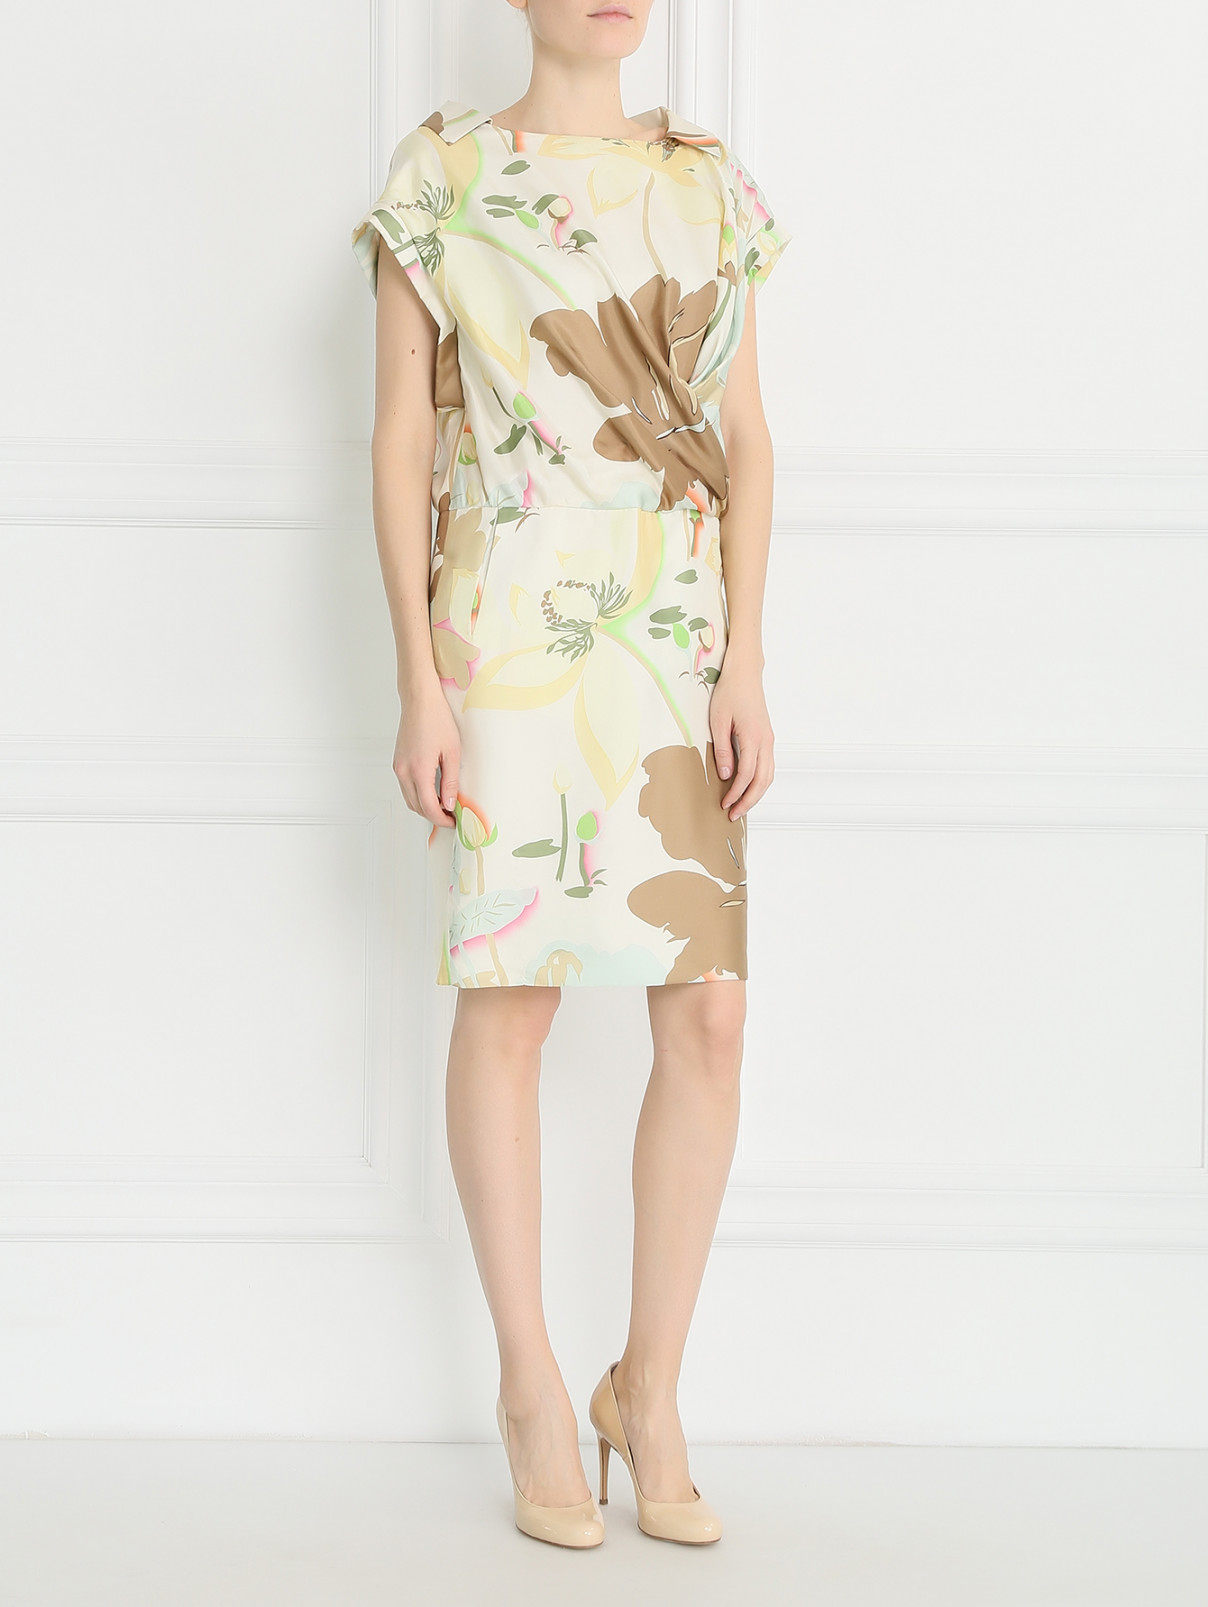 Платье из шелка  запахом и цветочным узором Maurizio Pecoraro  –  Модель Общий вид  – Цвет:  Зеленый